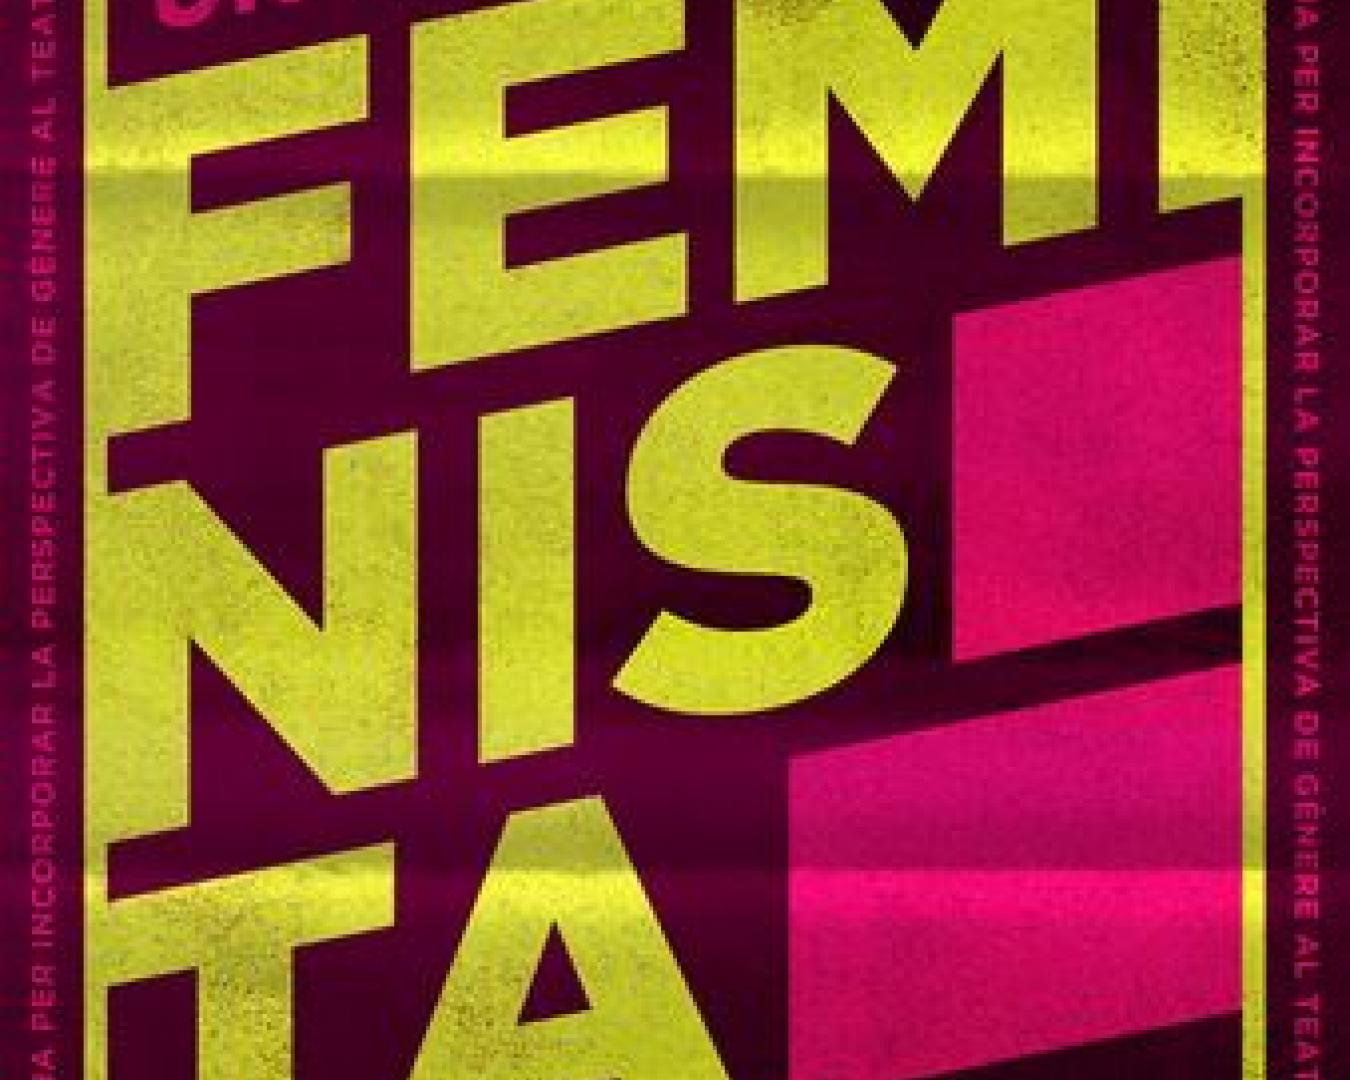 guia_teatre_feminista